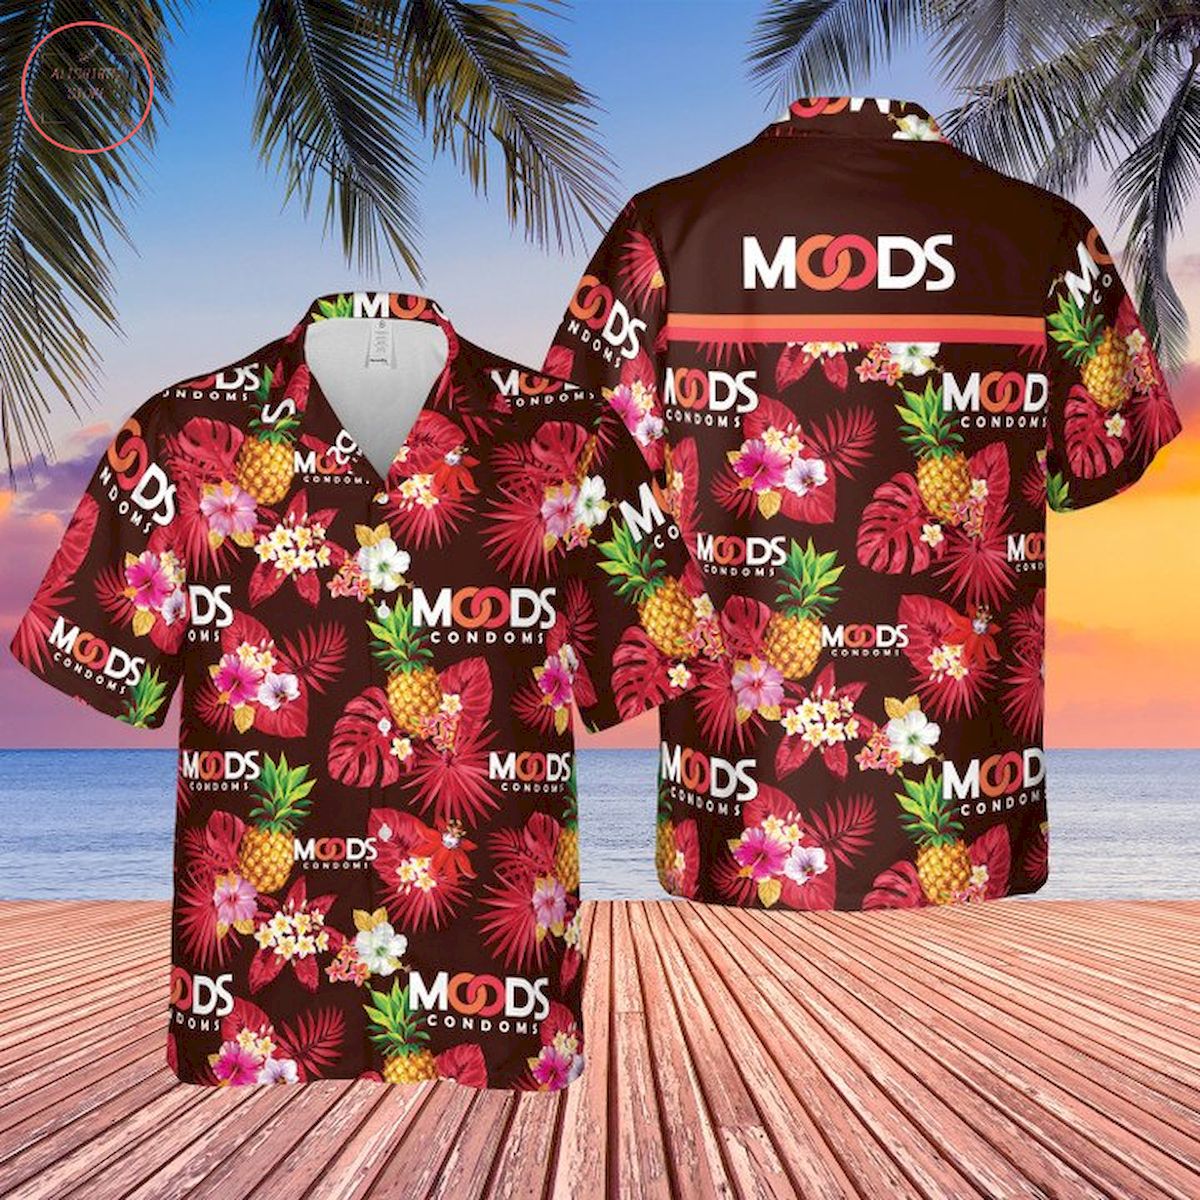 Moods Condoms Hawaiian Shirt and Shorts